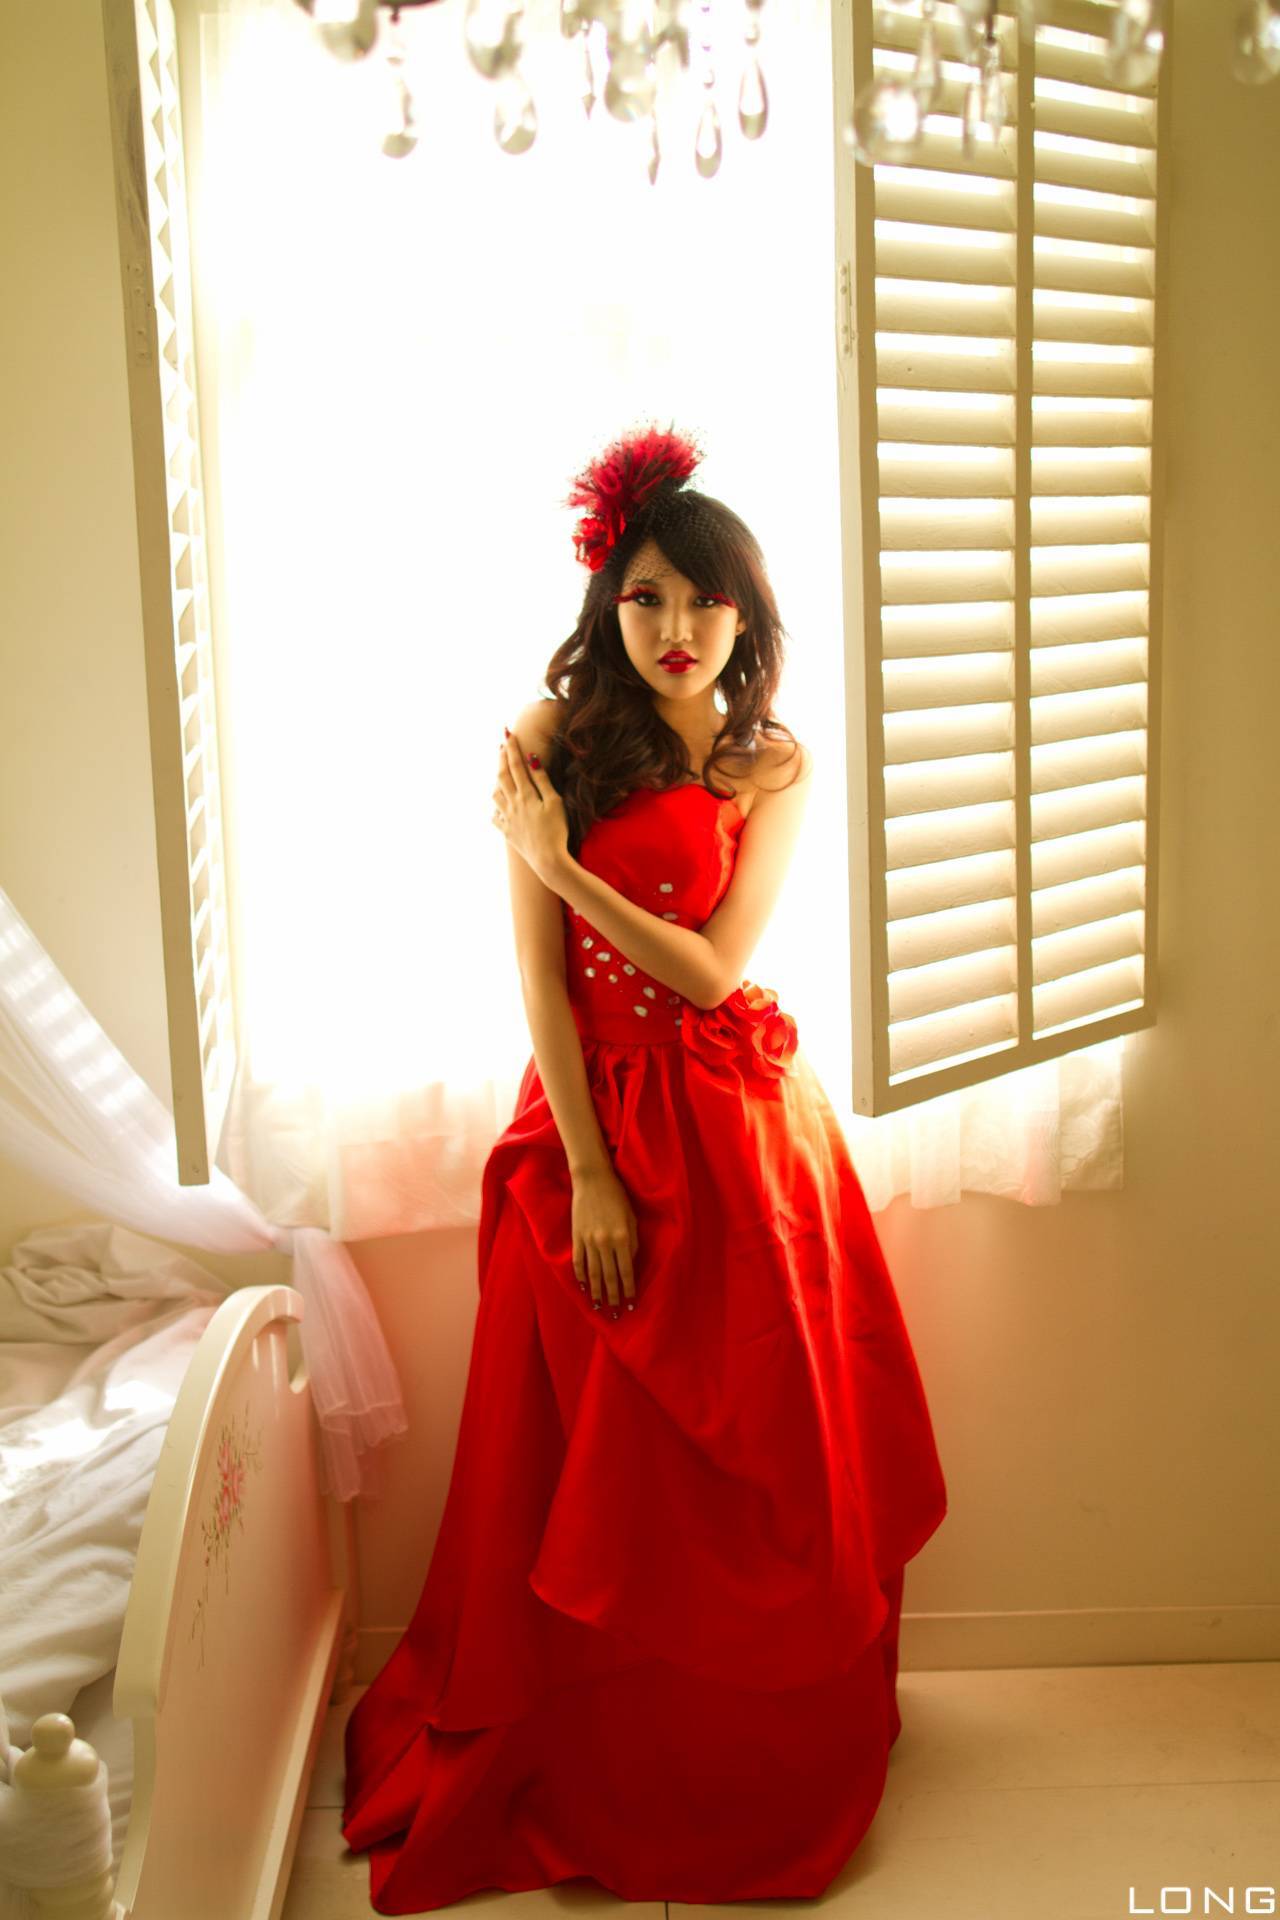 Jill weitingpeng's wedding dress red beauty photo set